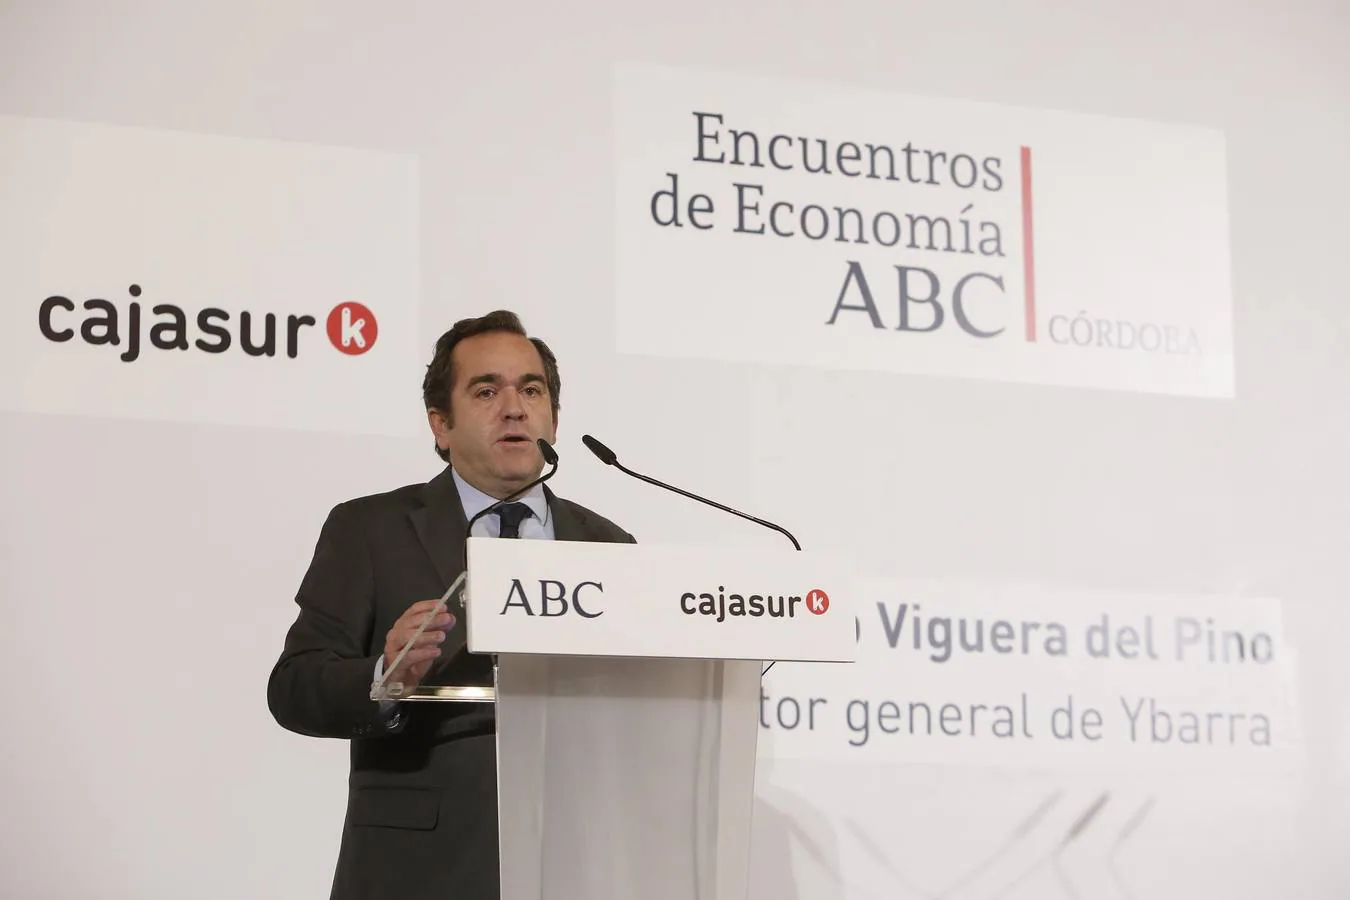 El Encuentro de Economía de ABC Córdoba con Francisco Viguera, en imágenes